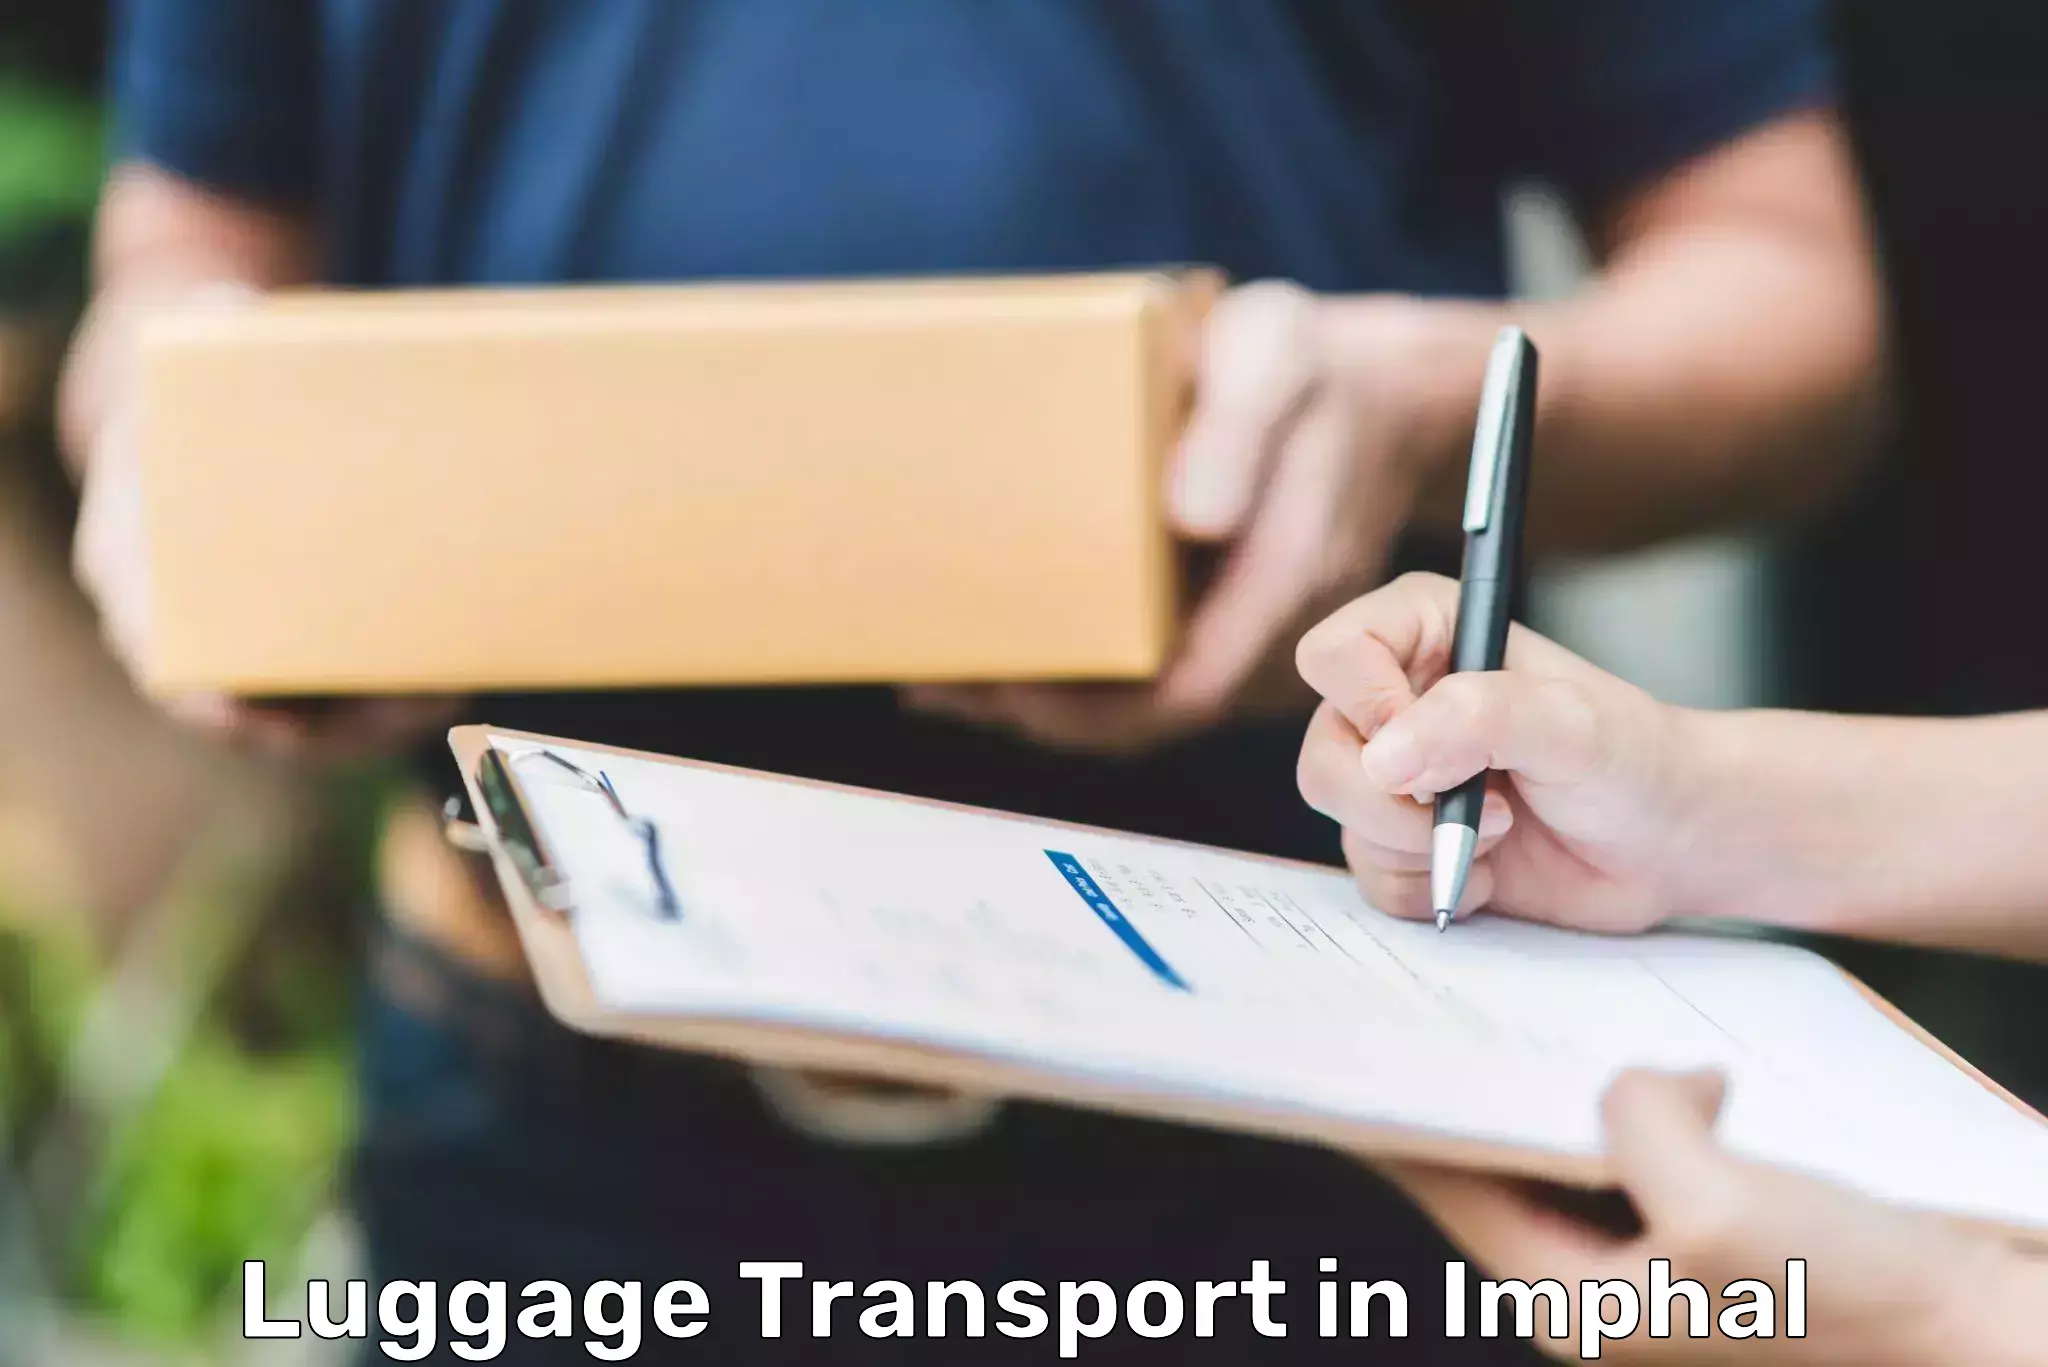 Baggage transport management in Imphal